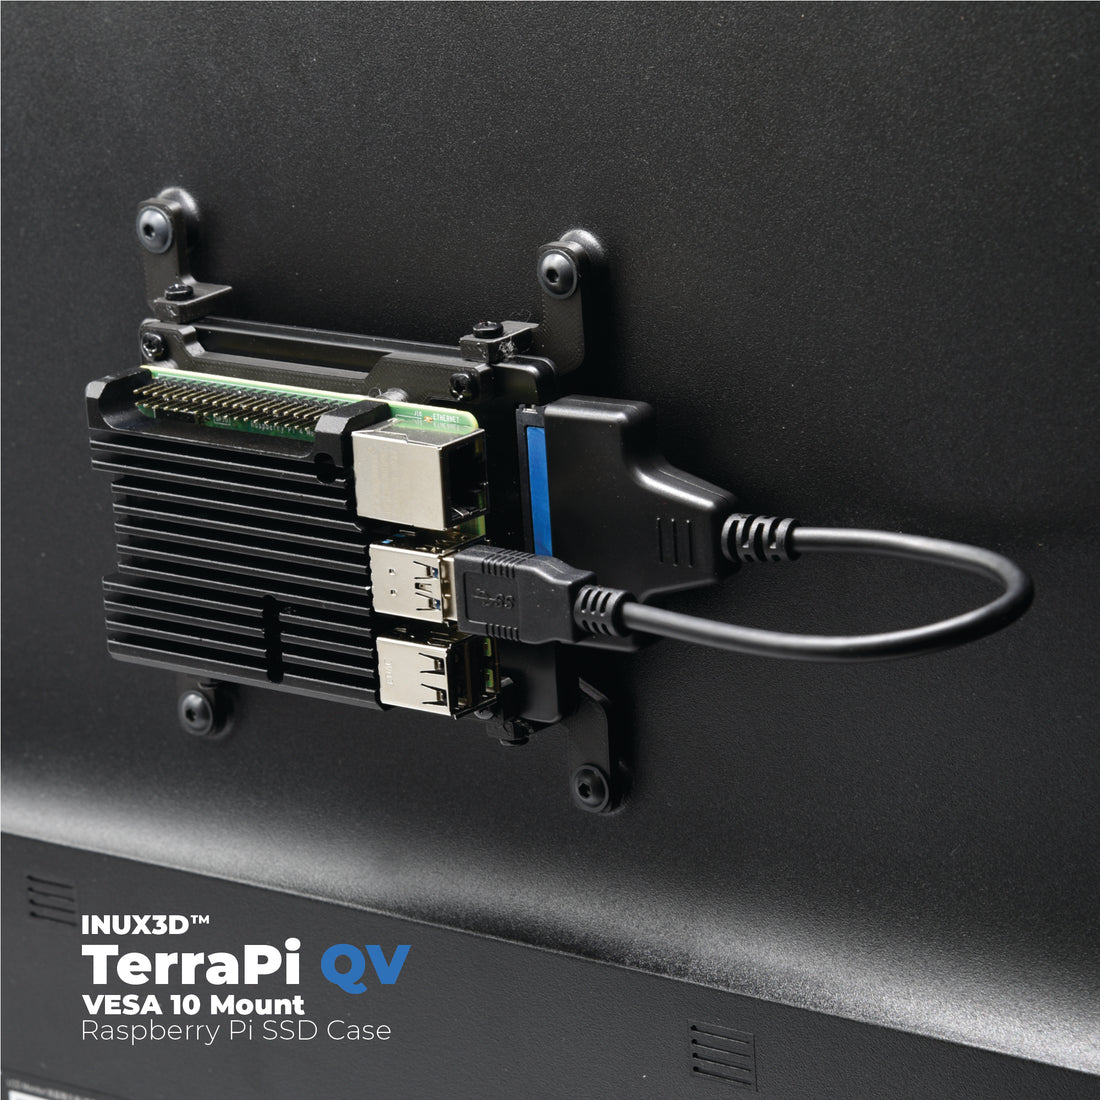 PepperTech Digital TerraPi QV (Compatible with VESA Mount) Raspberry Pi 4 Model B SSD Case Bundle